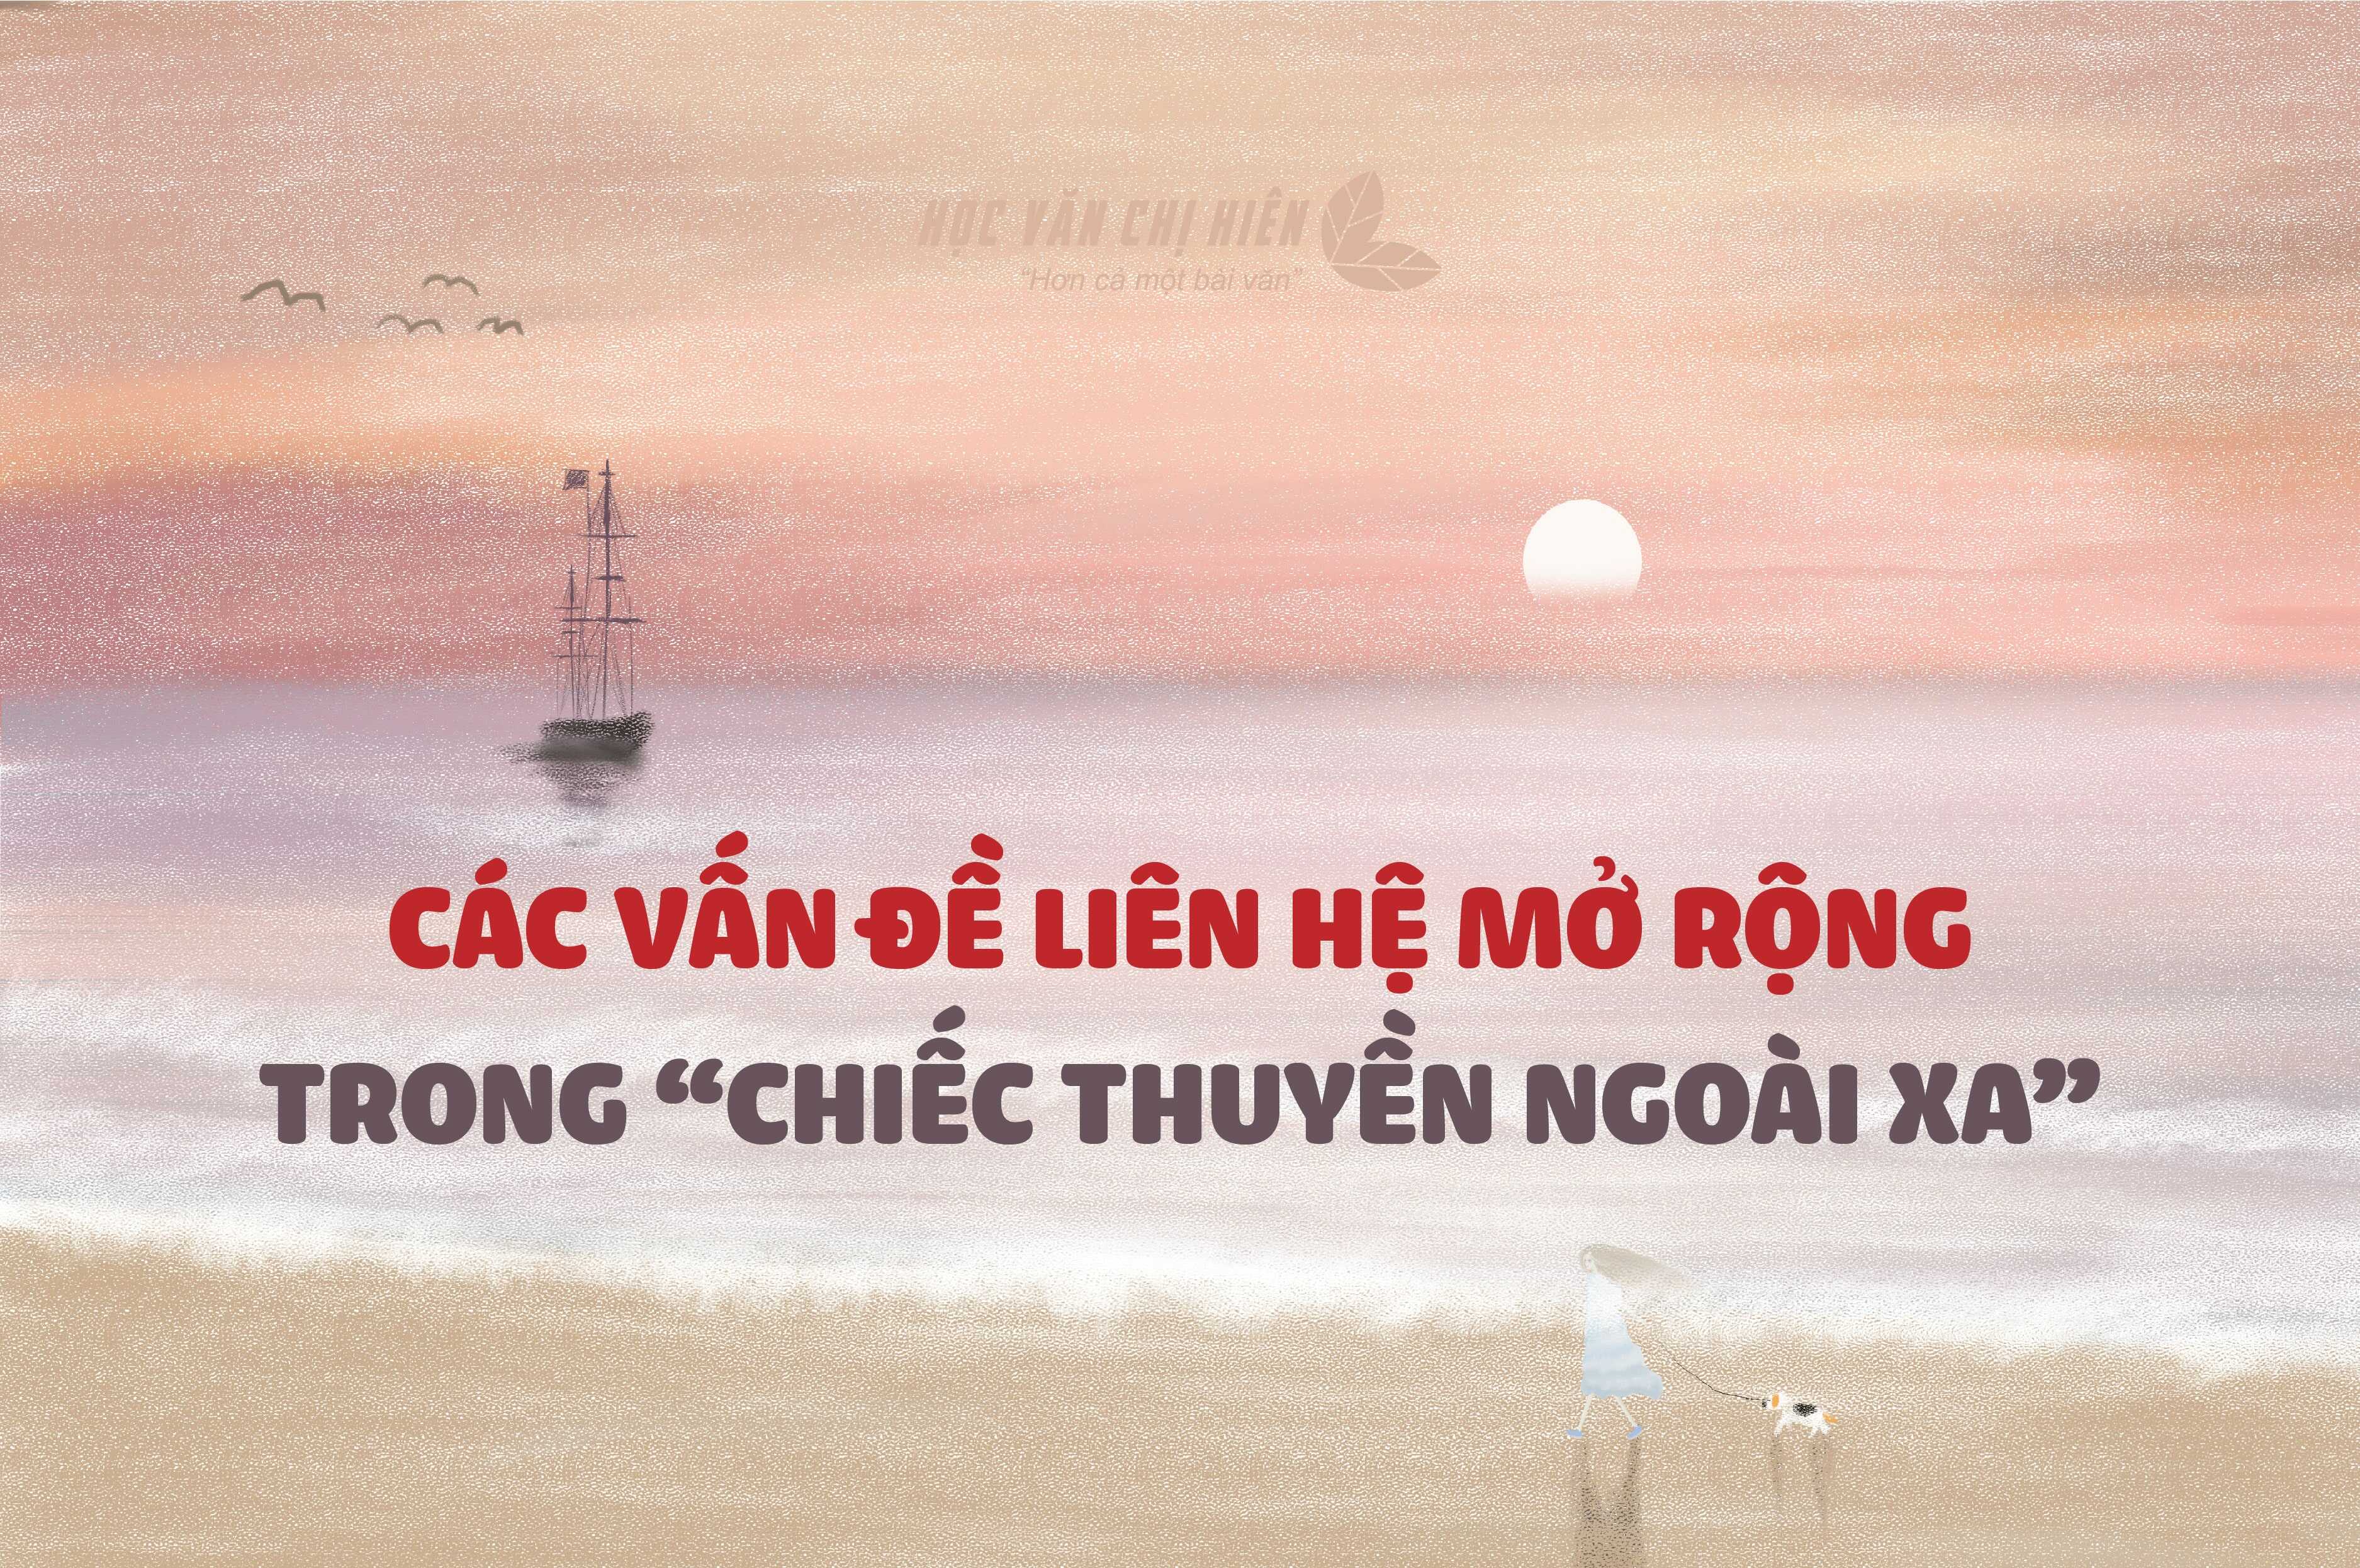 Hướng dẫn viết các vấn đề liên hệ mở rộng trong tác phẩm "Chiếc thuyền ngoài xa" (Nguyễn Minh Châu)